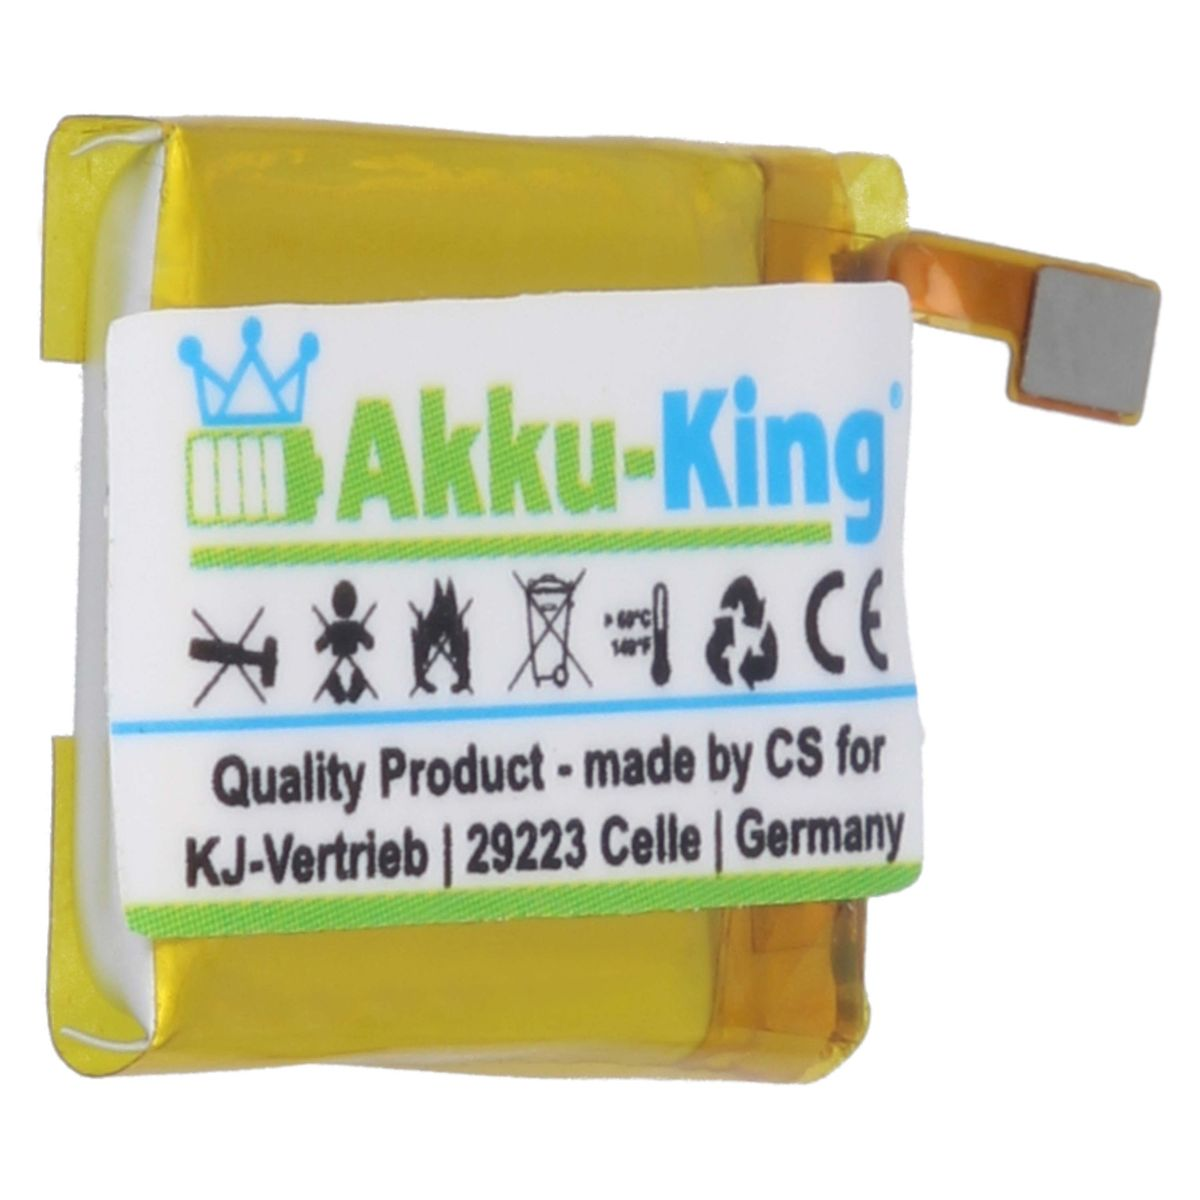 AKKU-KING Akku kompatibel mit Fitbit Volt, 3.87 Smartwatch-Akku, LSS271617 65mAh Li-Polymer